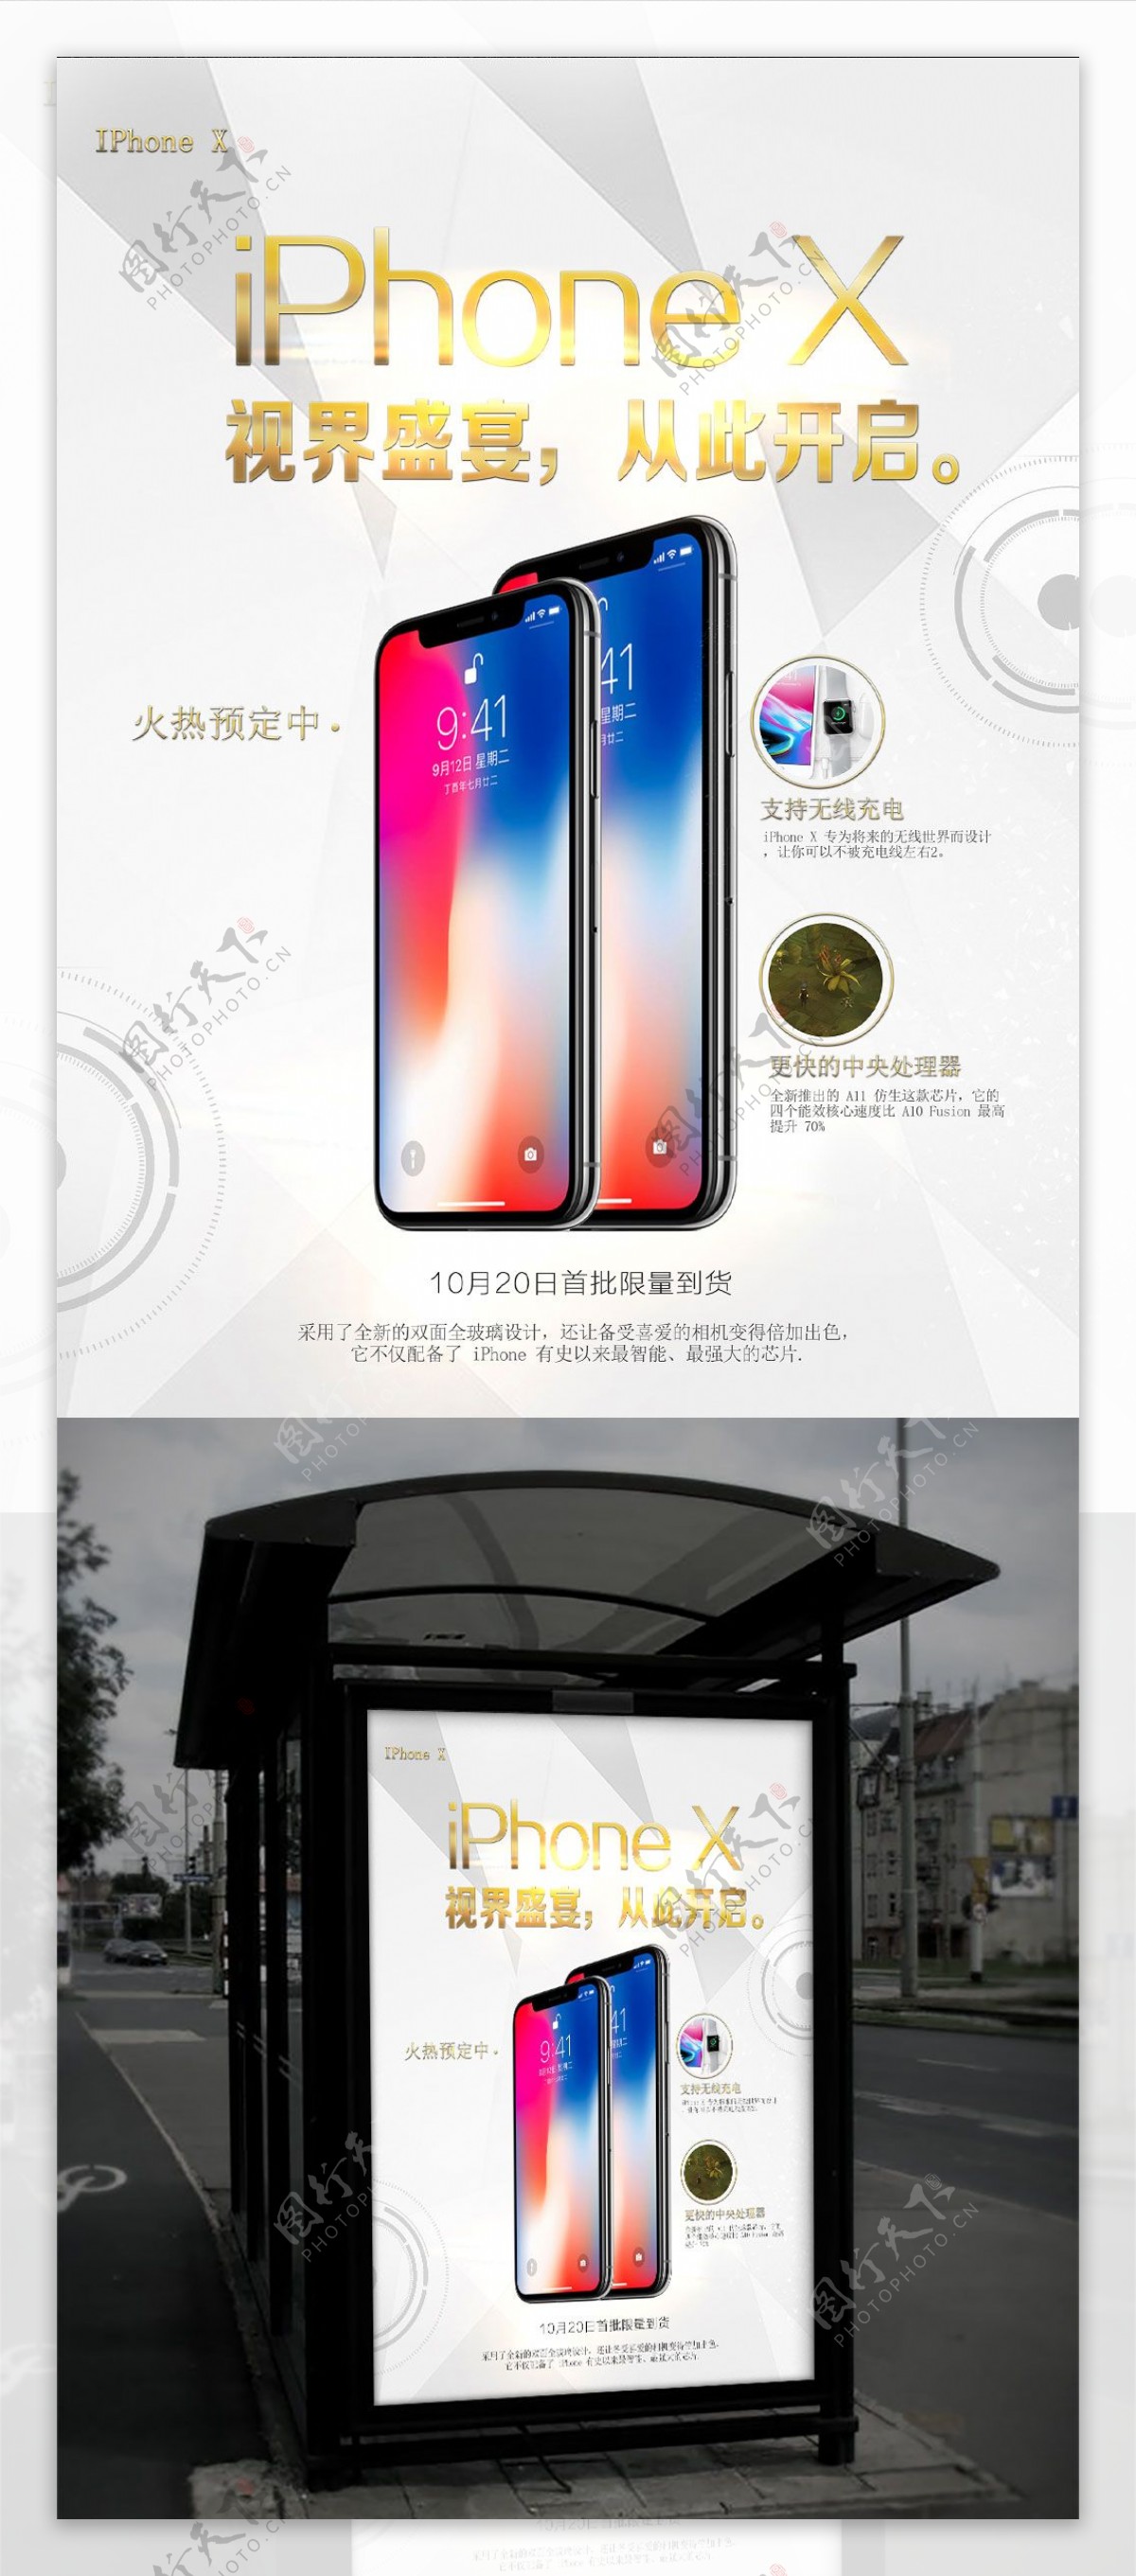 iPhoneX火热预定中海拔设计